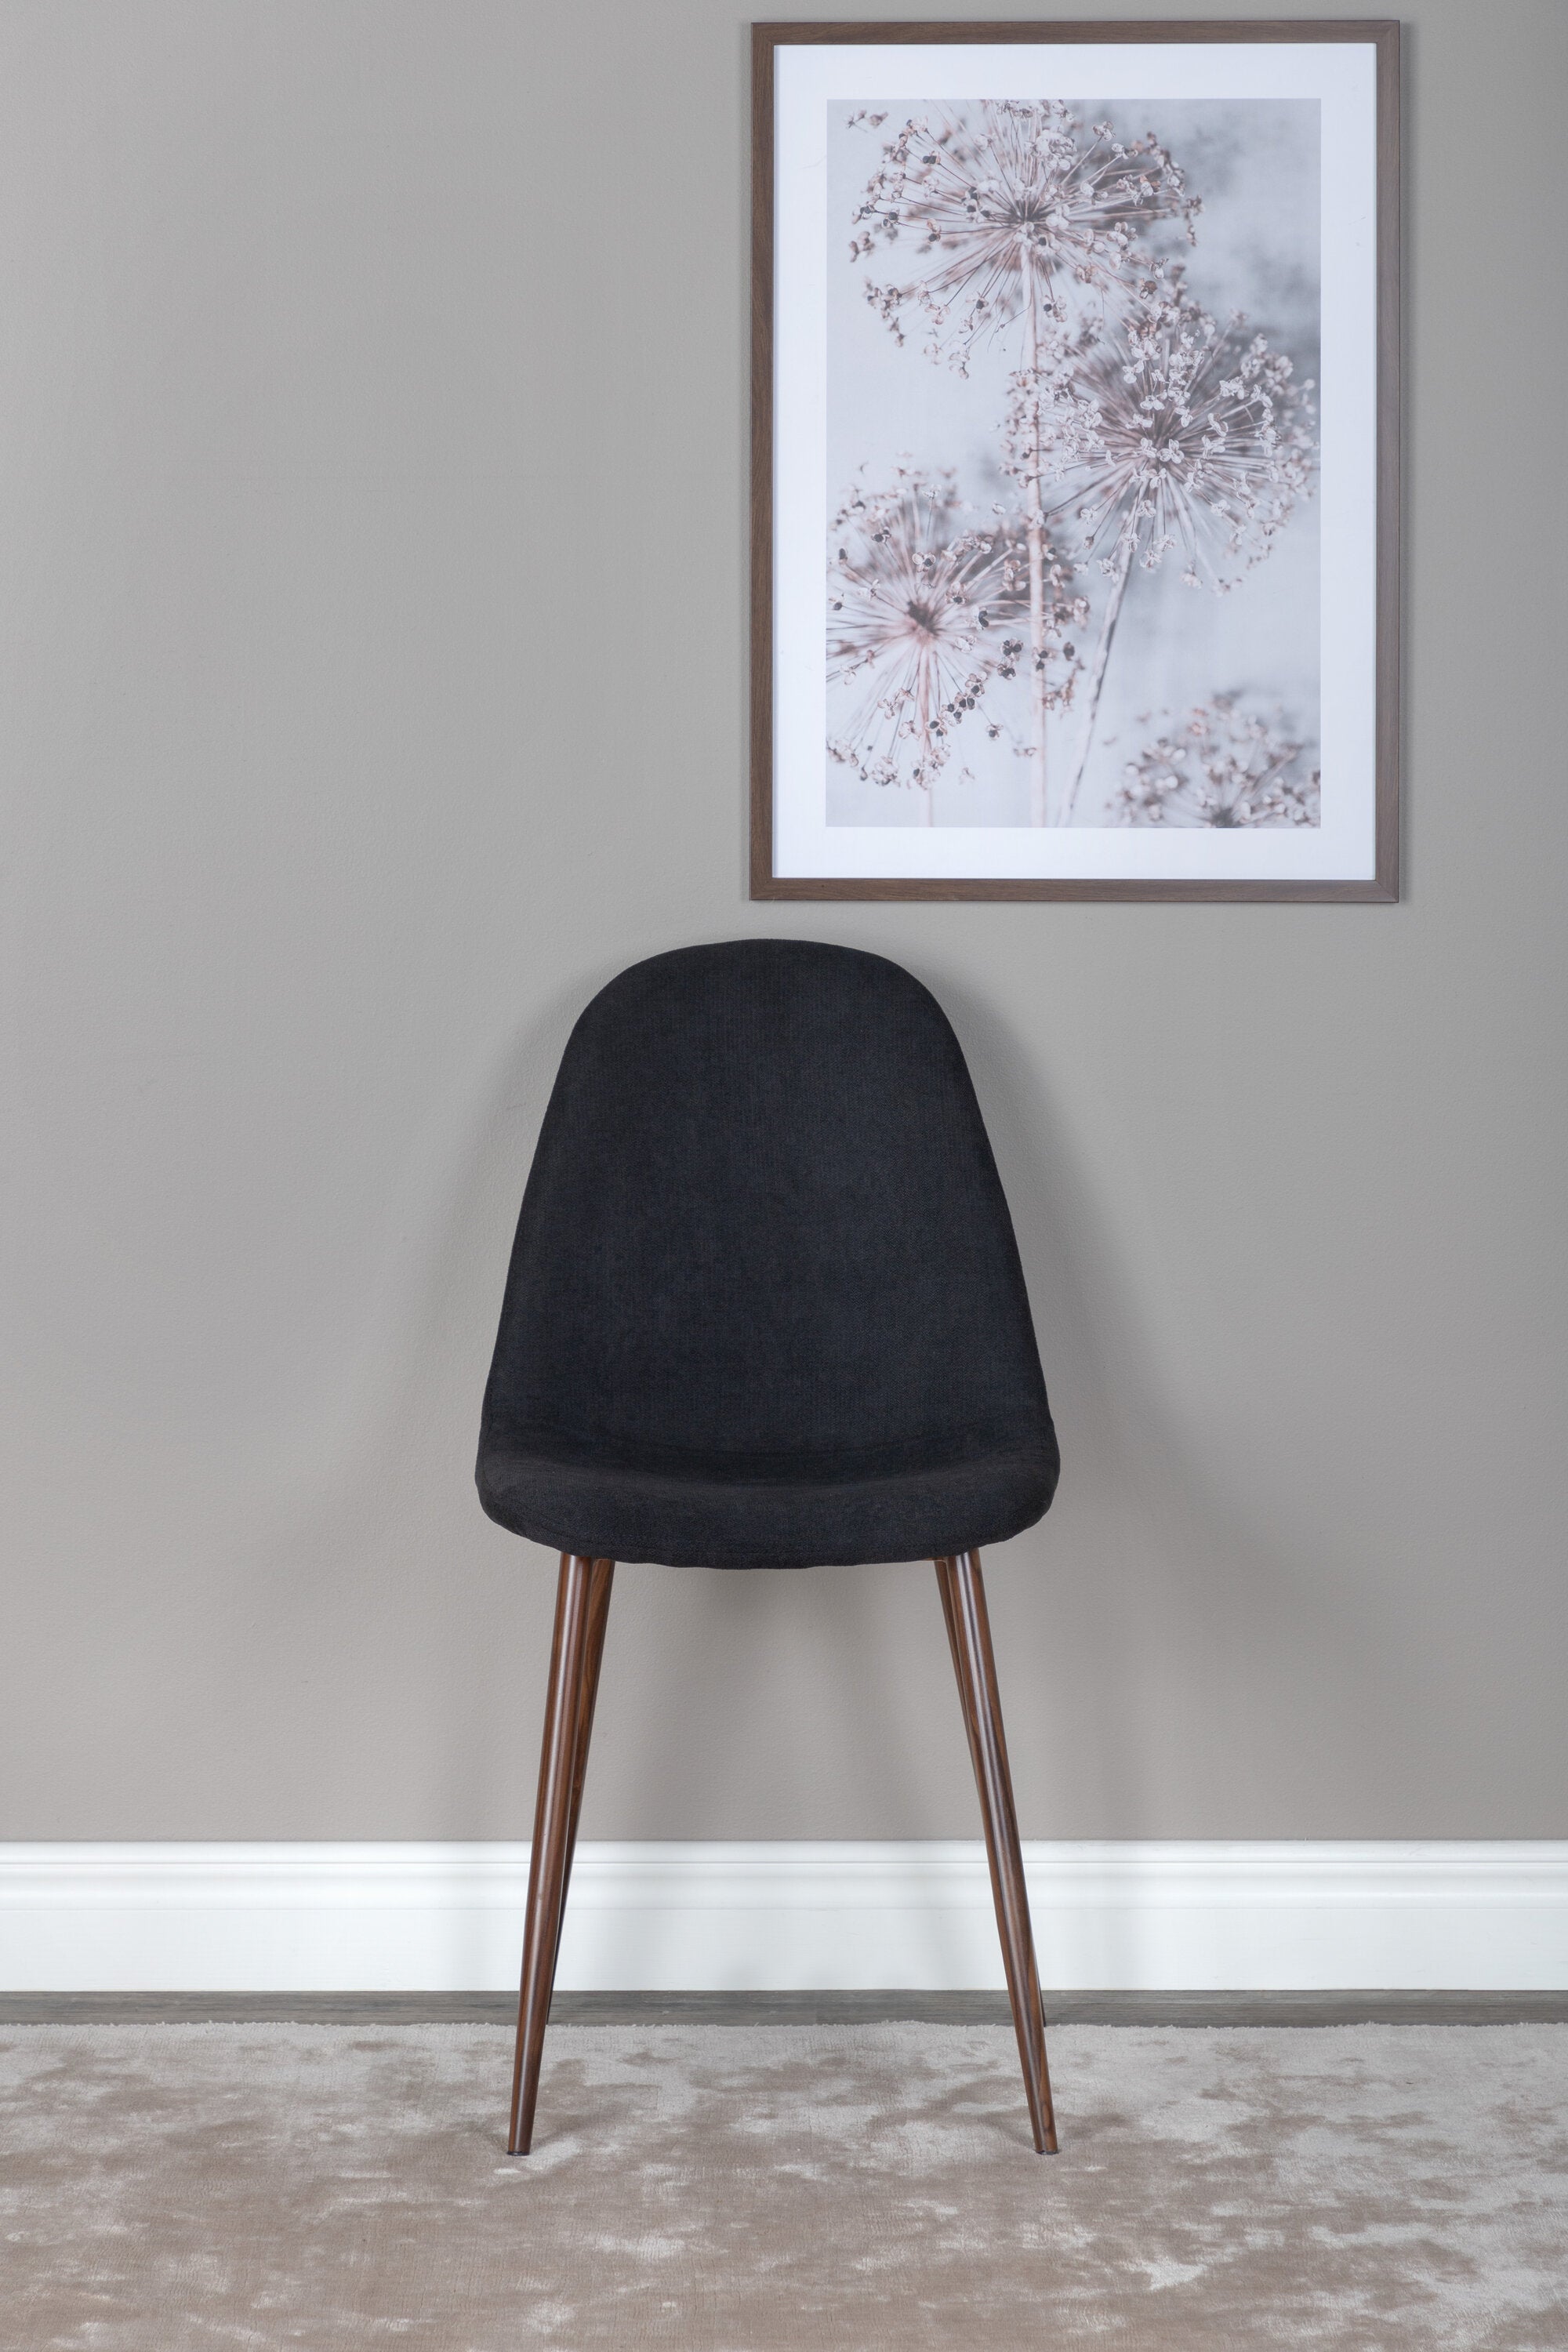 Polar Stuhl in Schwarz/Holz präsentiert im Onlineshop von KAQTU Design AG. Stuhl ist von Venture Home